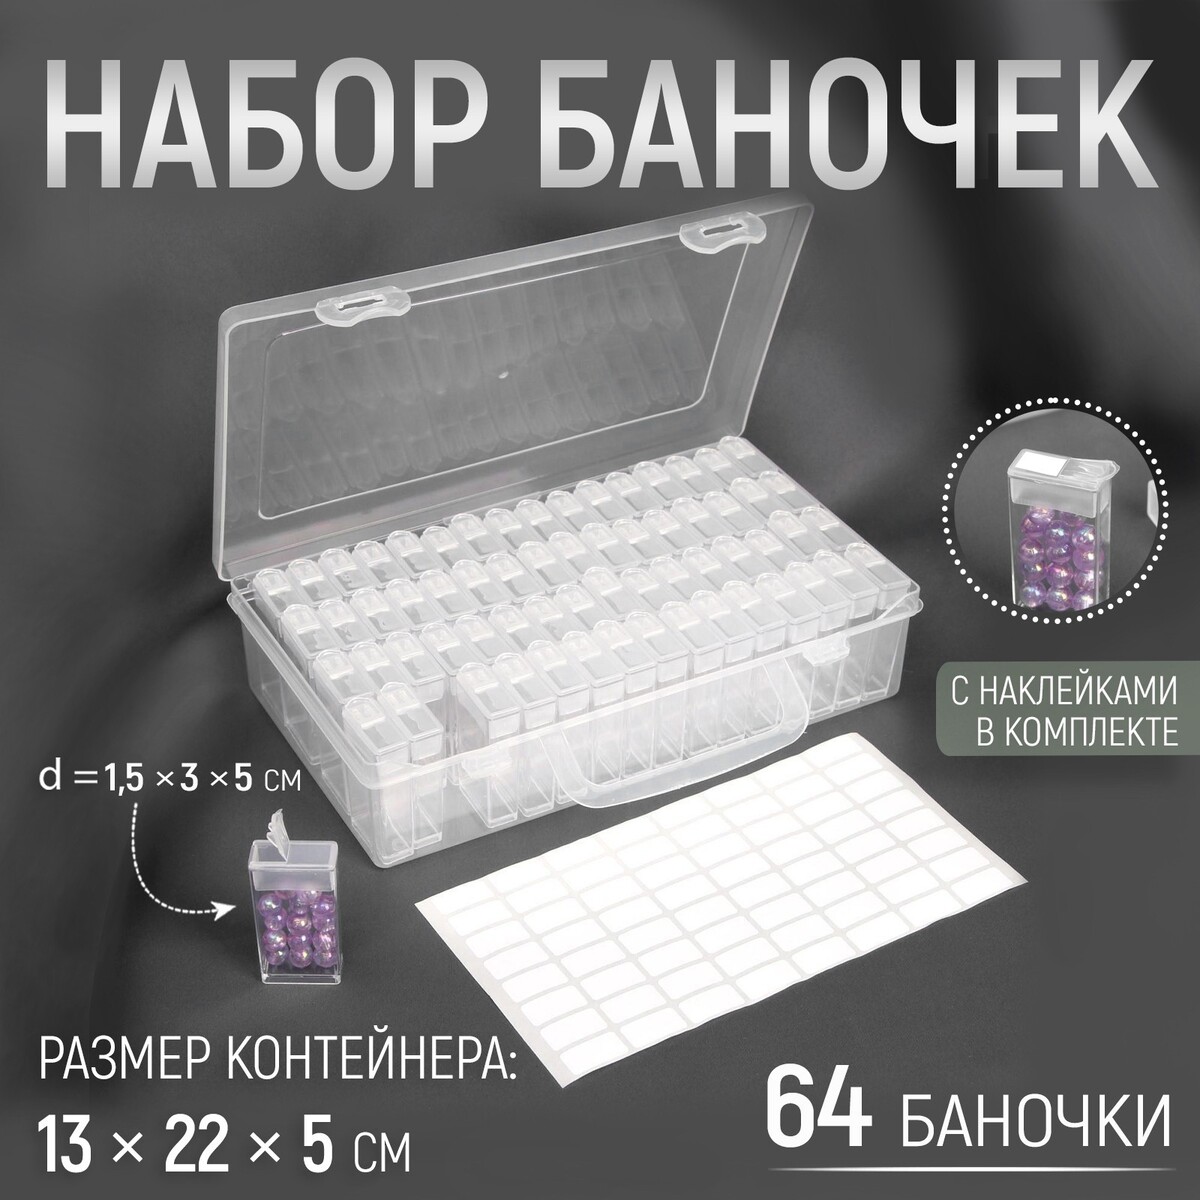 Набор баночек для рукоделия, 64 баночки, 1,5 × 3 × 5 см, в контейнере, 13 × 22 × 5 см, с наклейками, цвет прозрачный баночки для хранения мелочей накручивающиеся по 10 мл 15 мл 4 шт